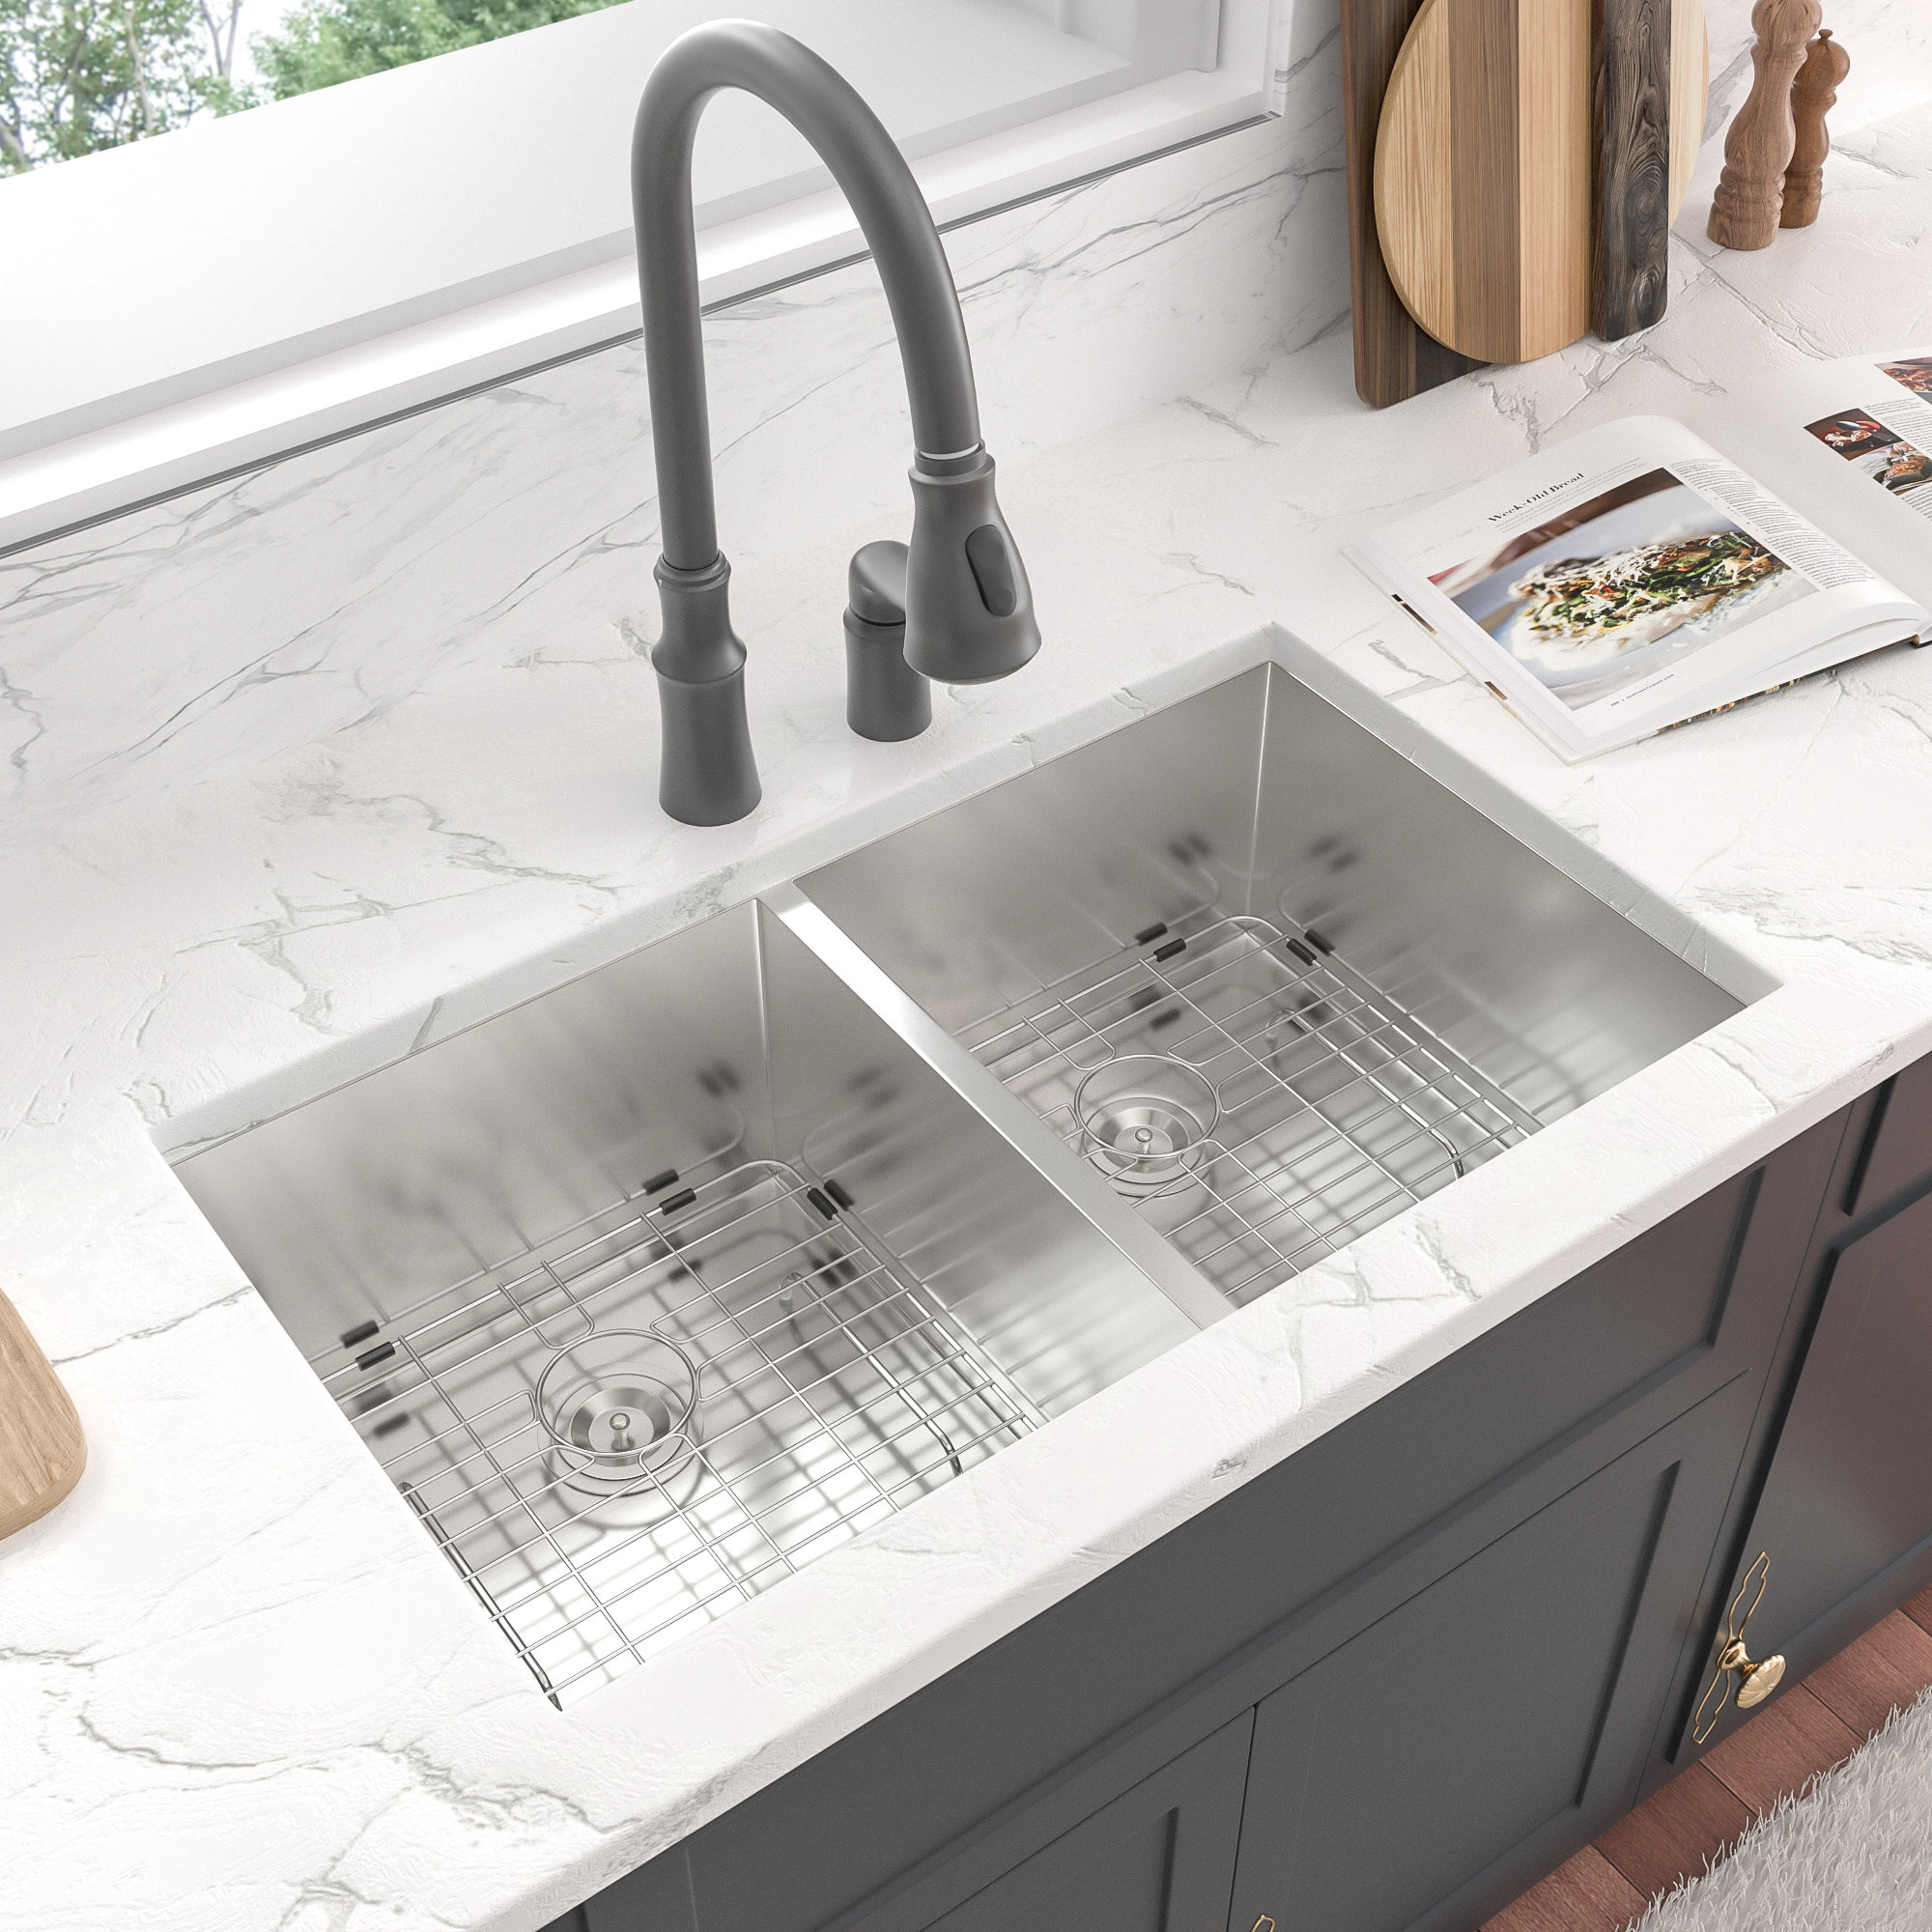 https://assets.wfcdn.com/im/04230511/compr-r85/1541/154117248/33-l-undermount-double-bowl-stainless-steel-kitchen-sink.jpg